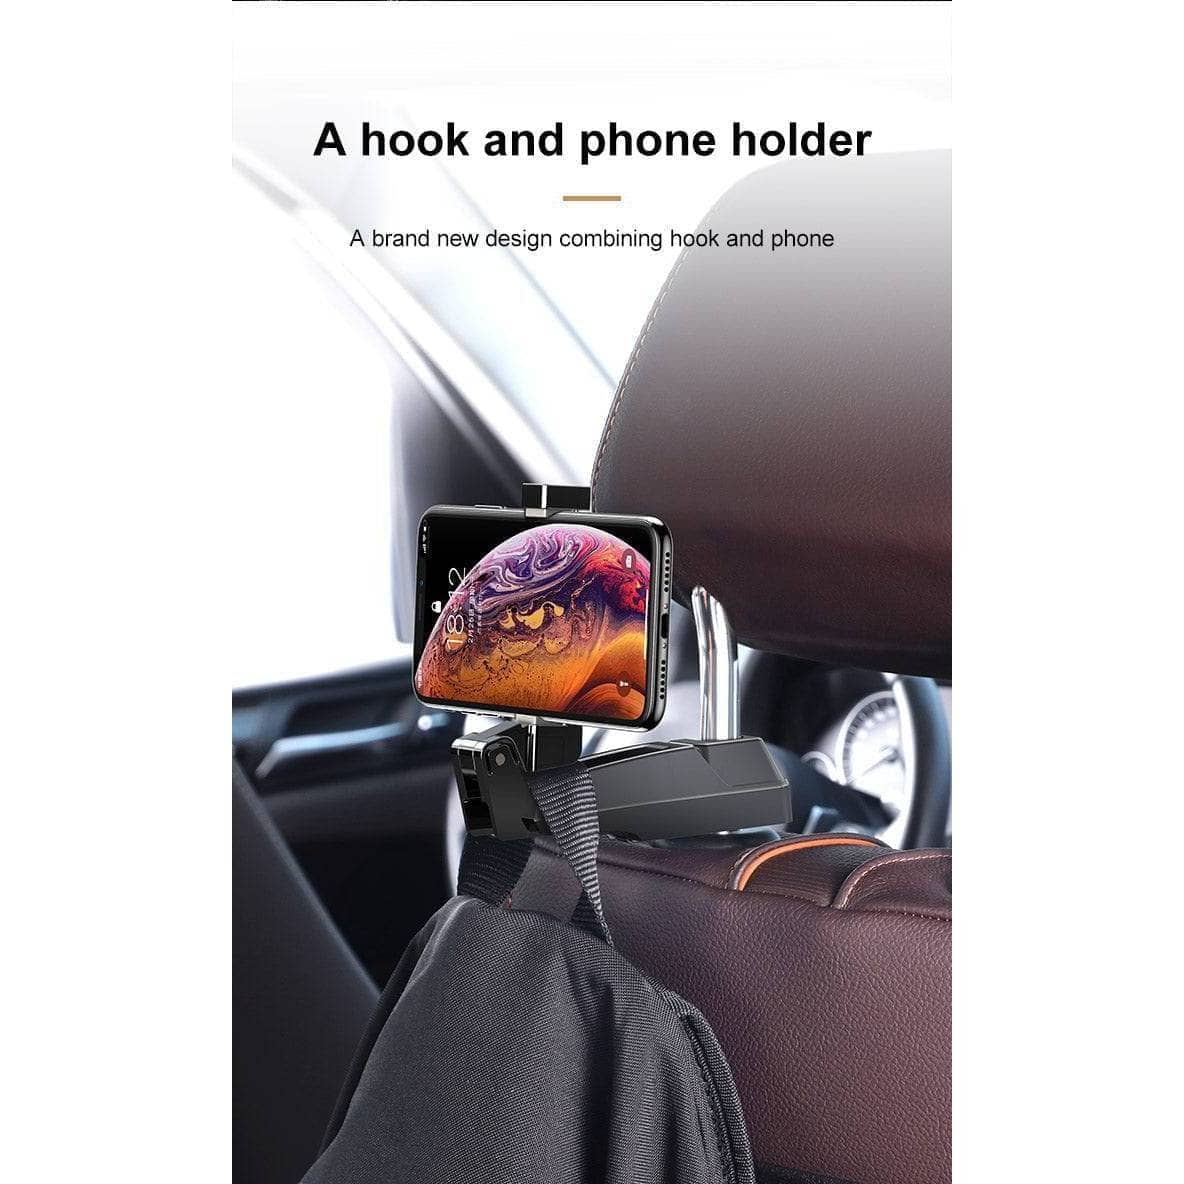 Baseus Car Phone Holder Headrest Hooks for iPhone Huawei Back Seat Hook Car Mount Holder Fastener Seat Back Organizer Bag Hanger-Mobile Phone Stands-Baseus-www.PhoneGuy.com.au